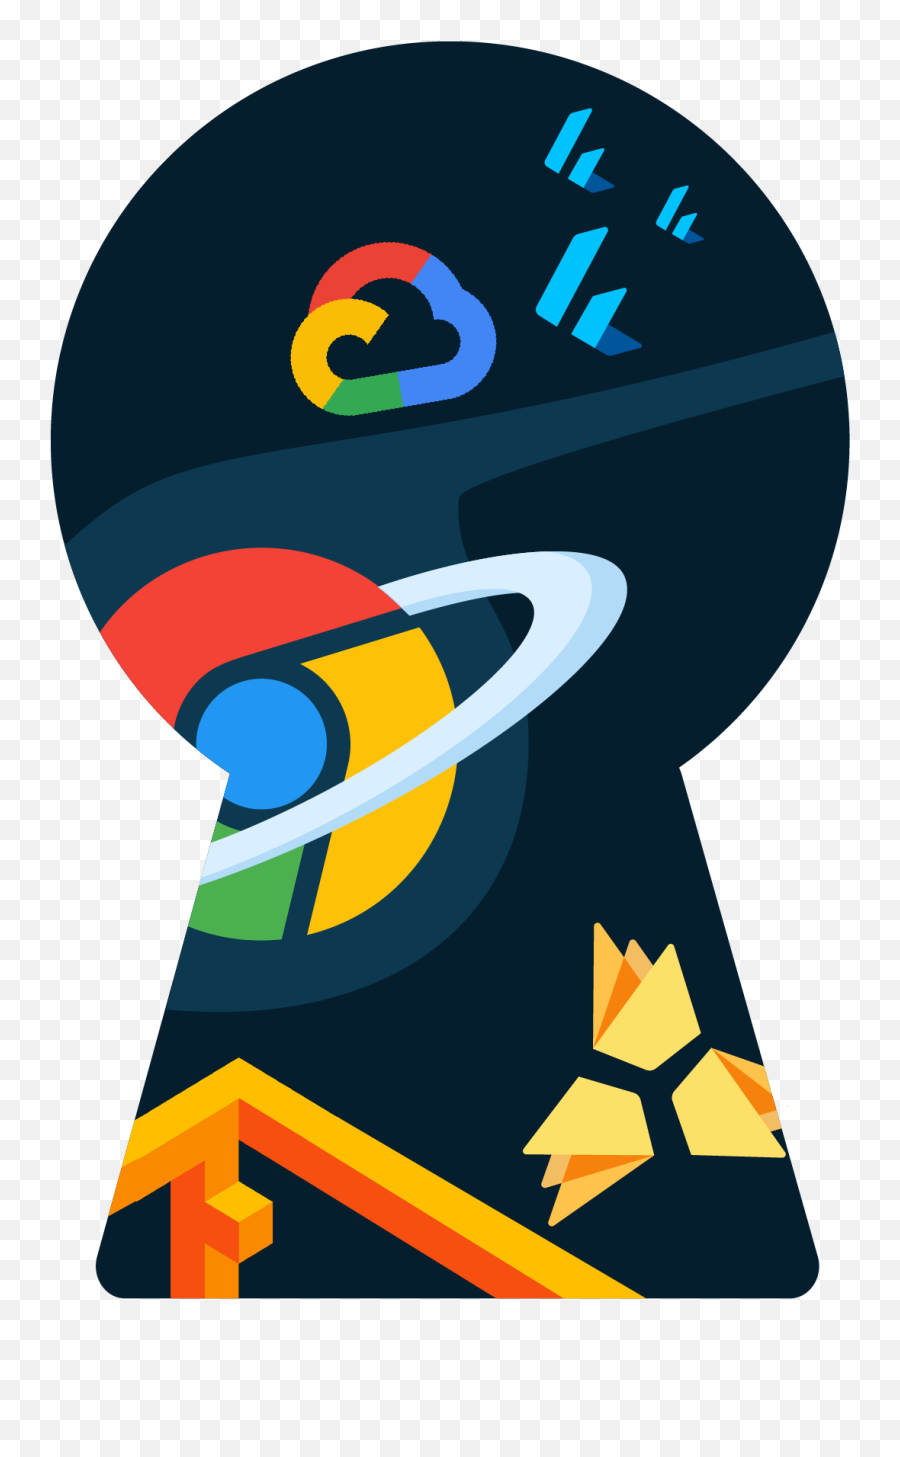 Devfest Bangalore 2019 - Graphic Design Png,Google Logo 2019